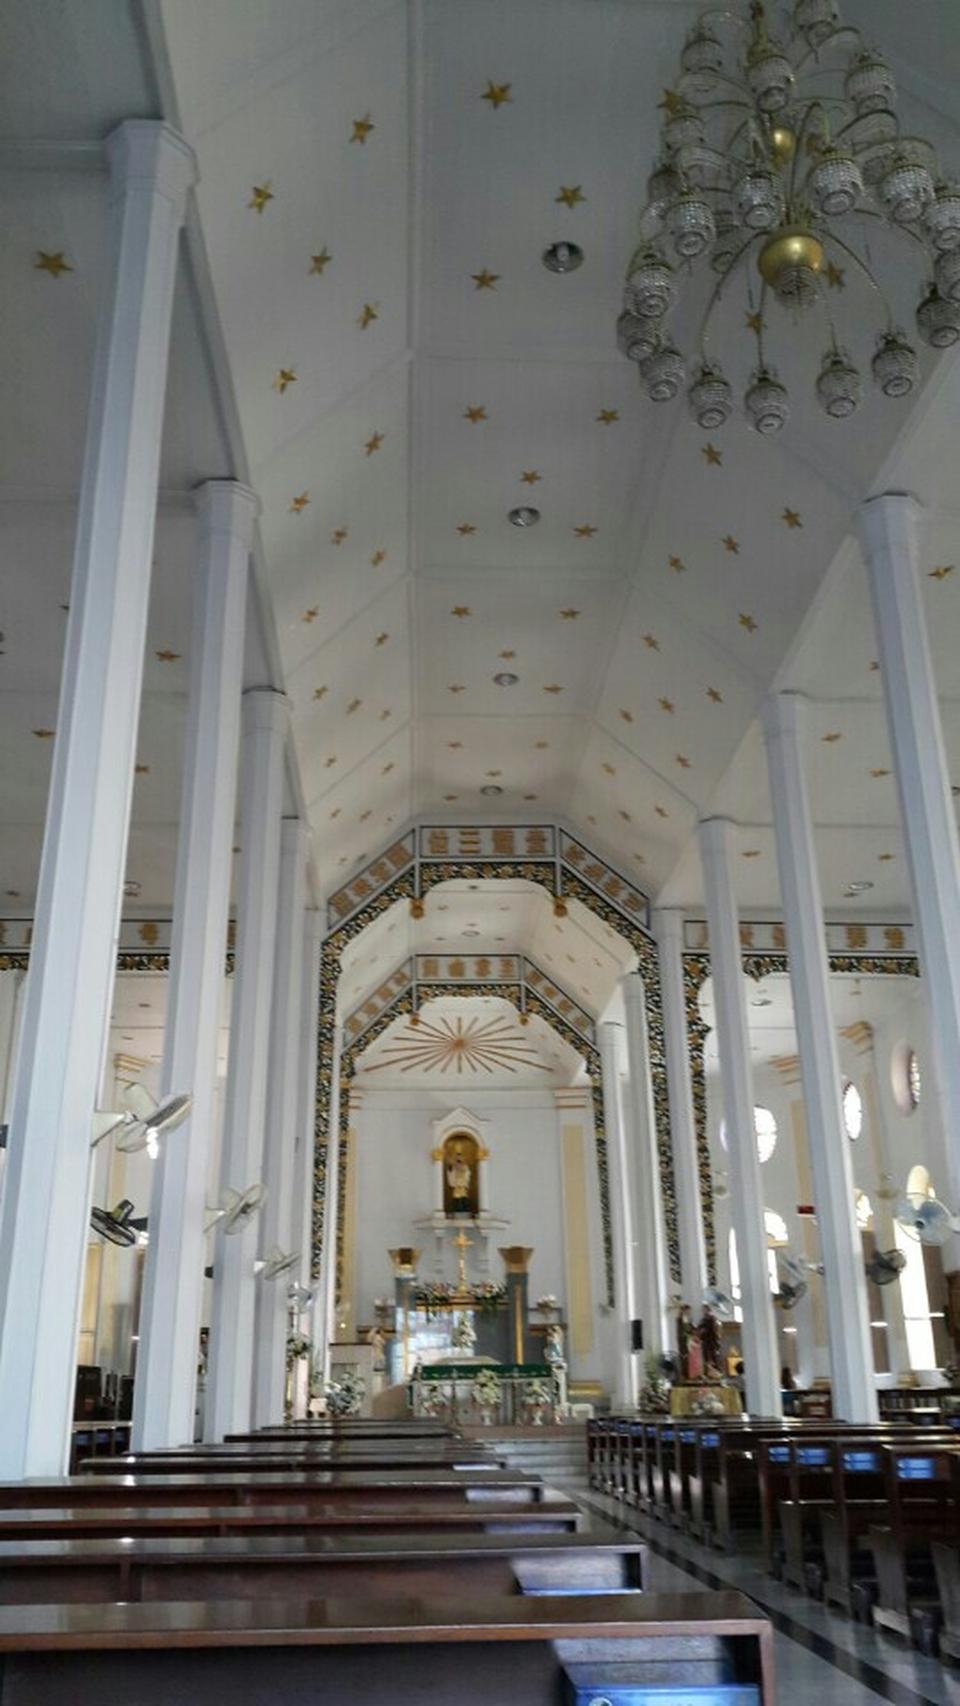 โบสถ์เซนต์ฟรัง - สถานที่ท่องเที่ยว ท่องเที่ยวไทย